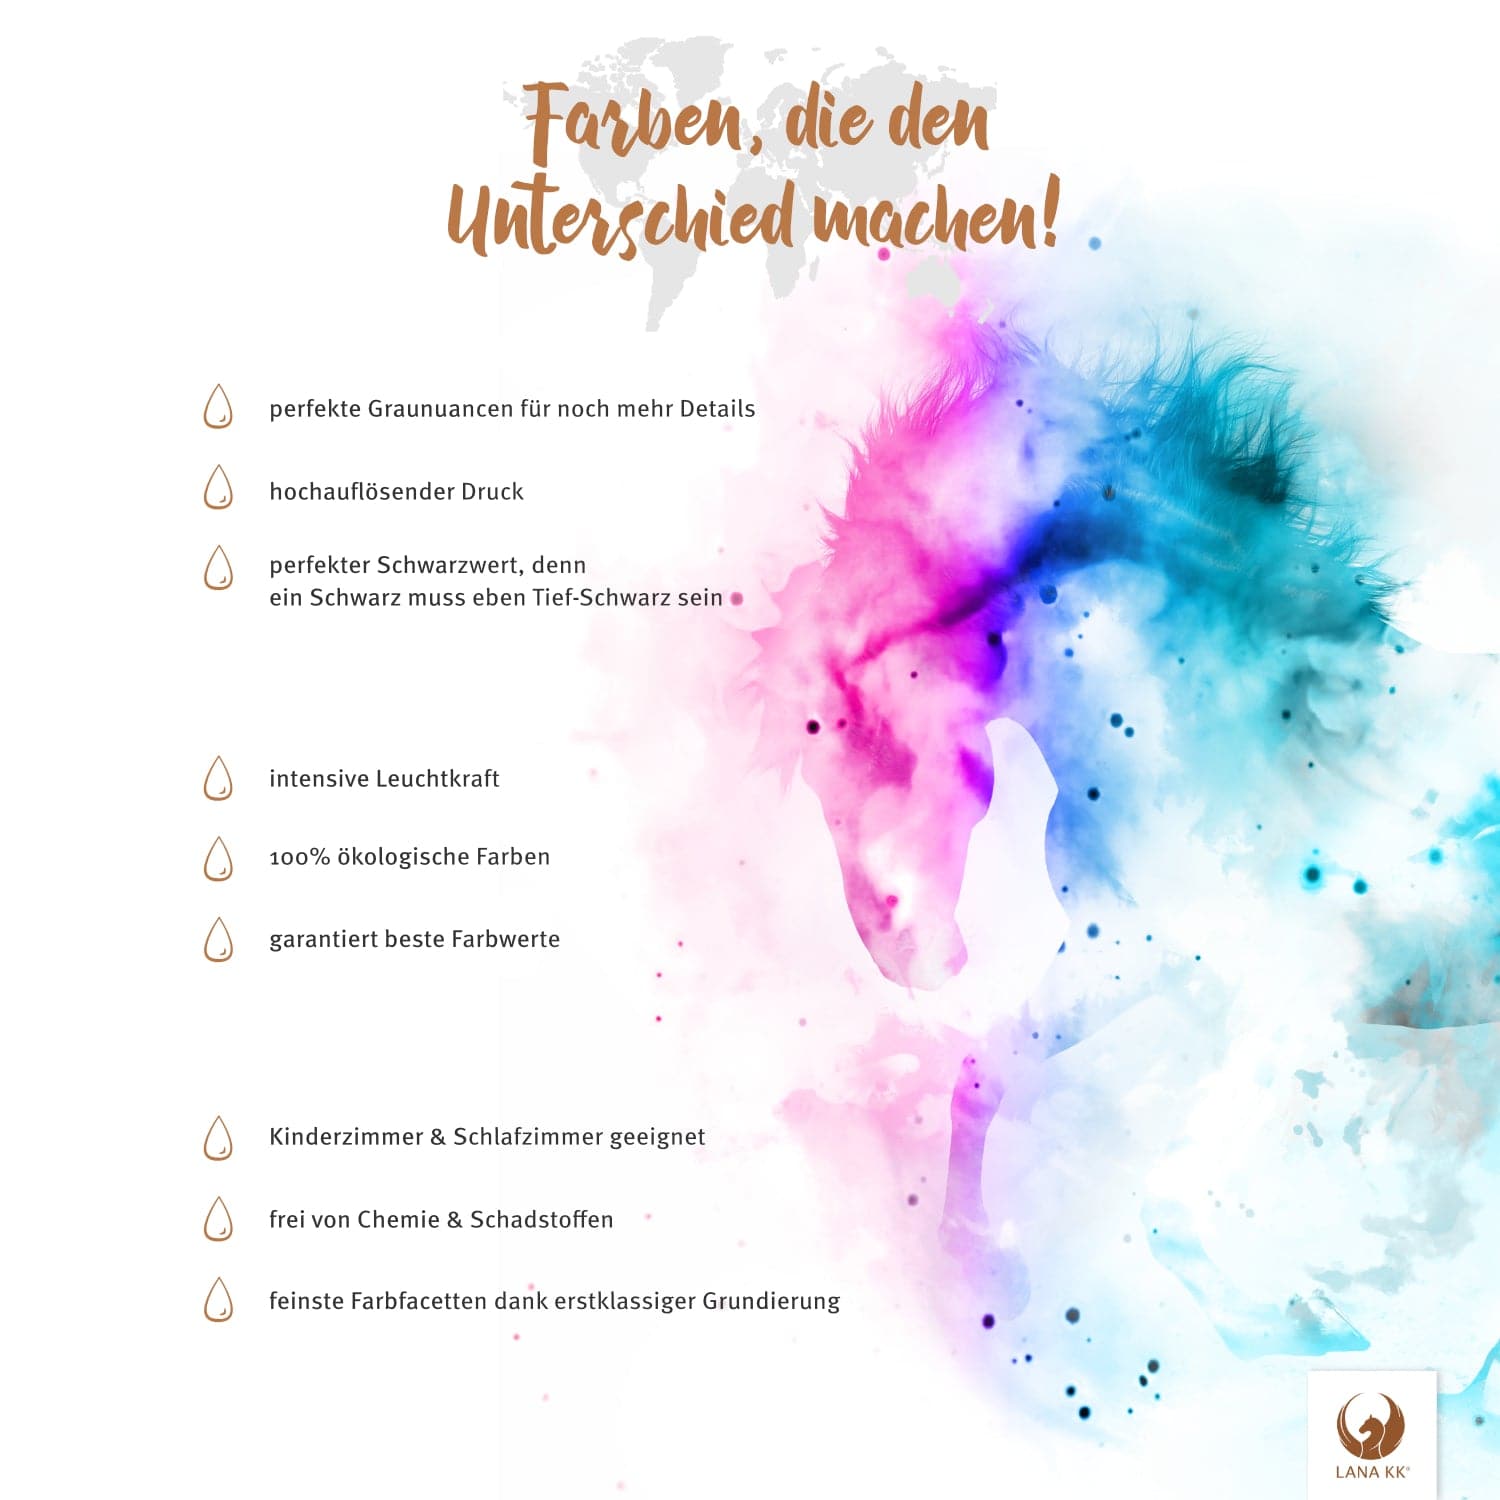 Farben, die den Unterschied machen! Deine Deutschlandkarte Edelgrau besticht mit erstklassigem Druck, leuchtenden Farben und ist dabei vollkommen frei von Chemie und Farbstoffen.